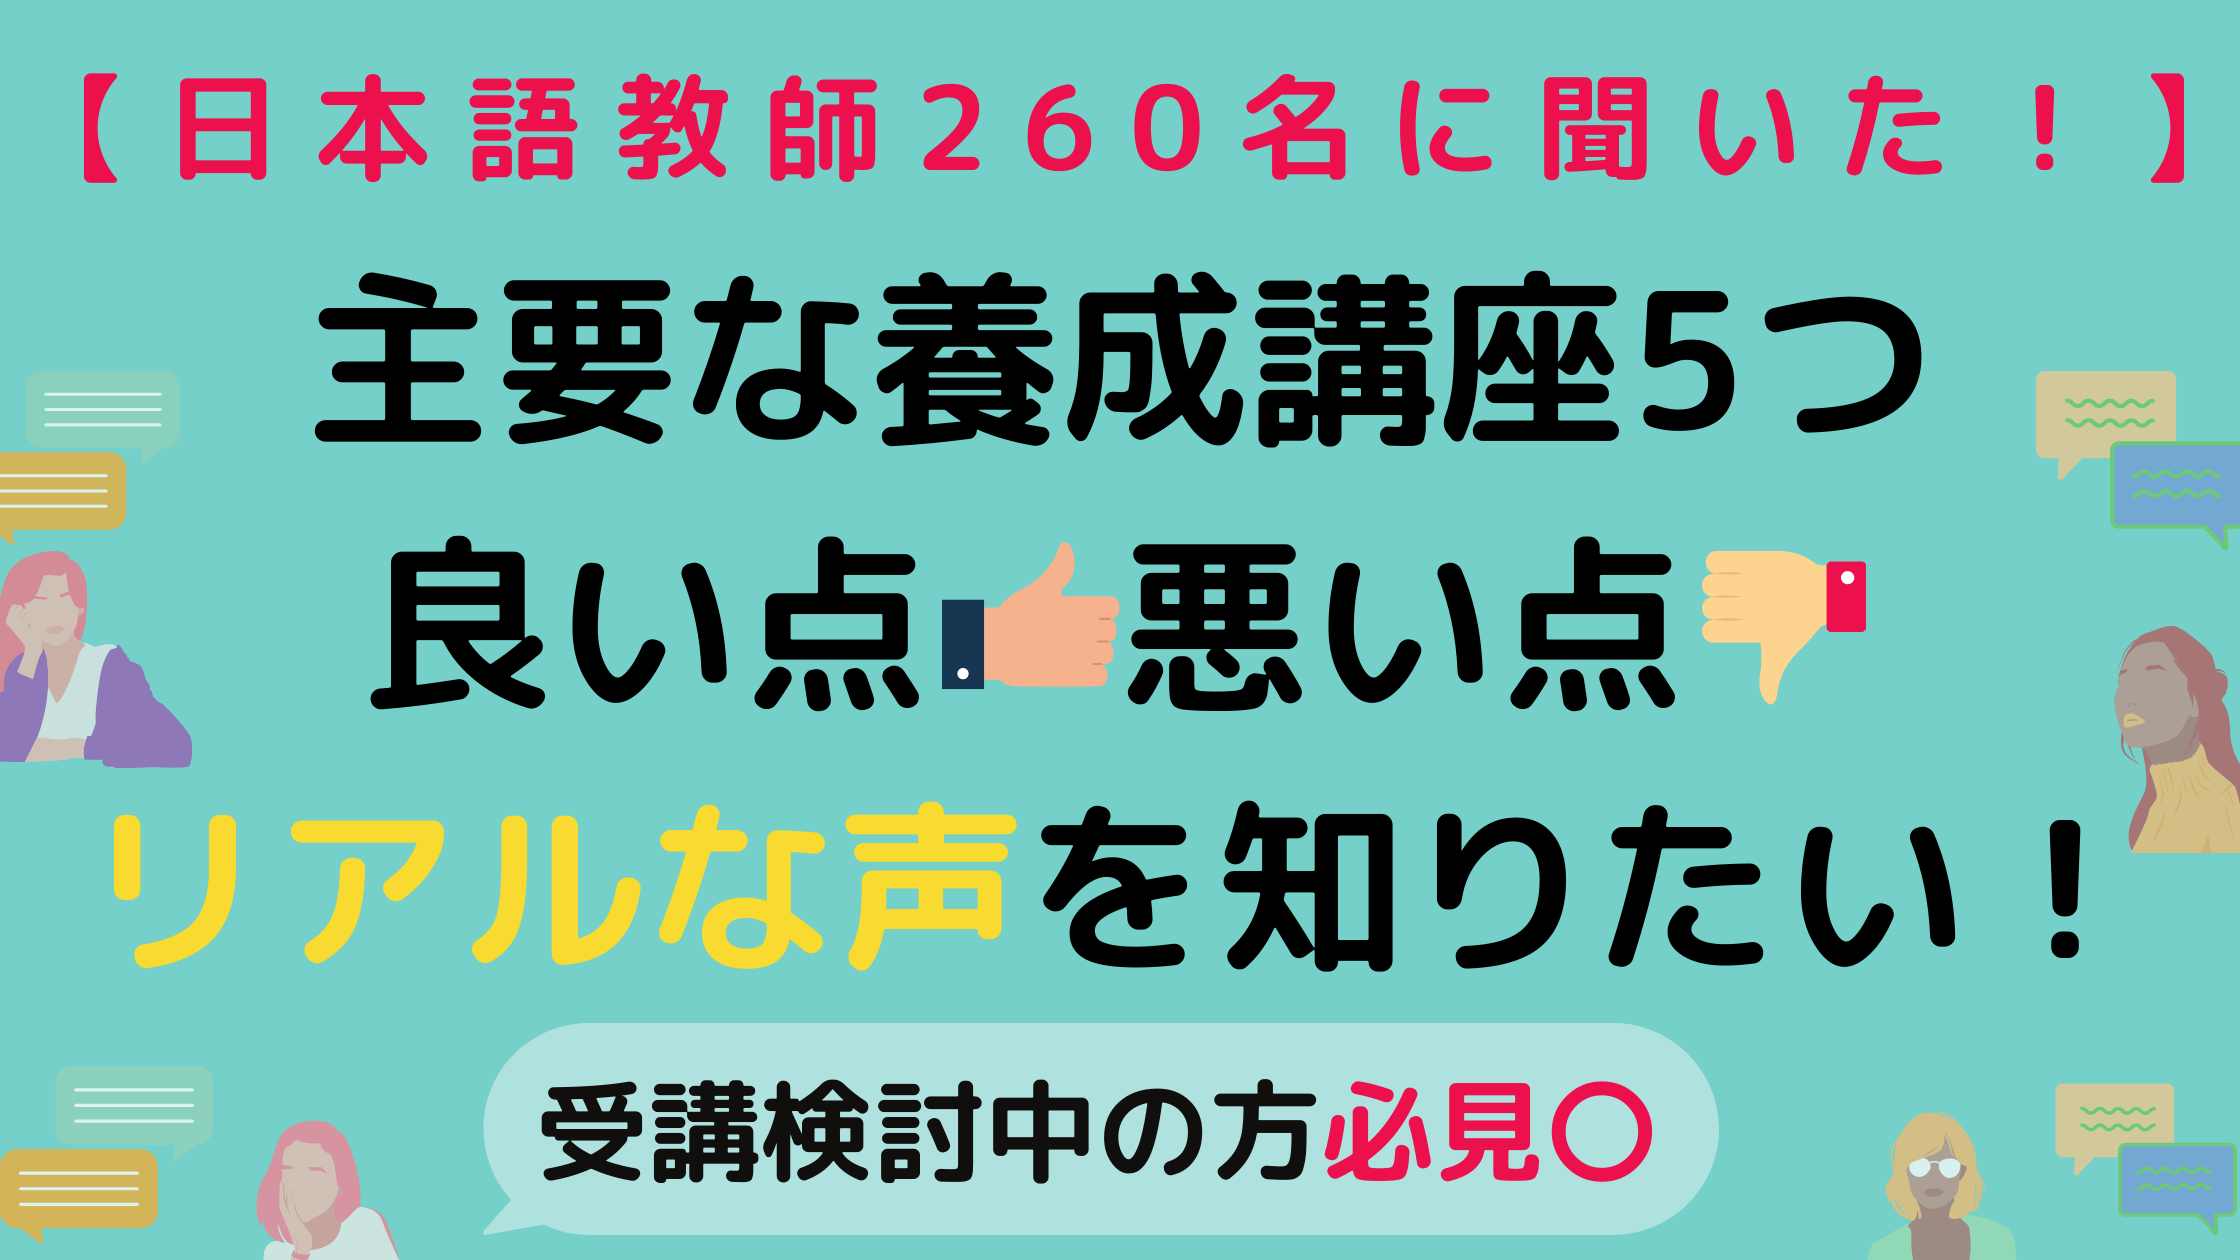 260名の口コミ 大手の日本語教師養成講座のリアルな口コミや評判 良い点 悪い点を公開します 日本語情報バンク